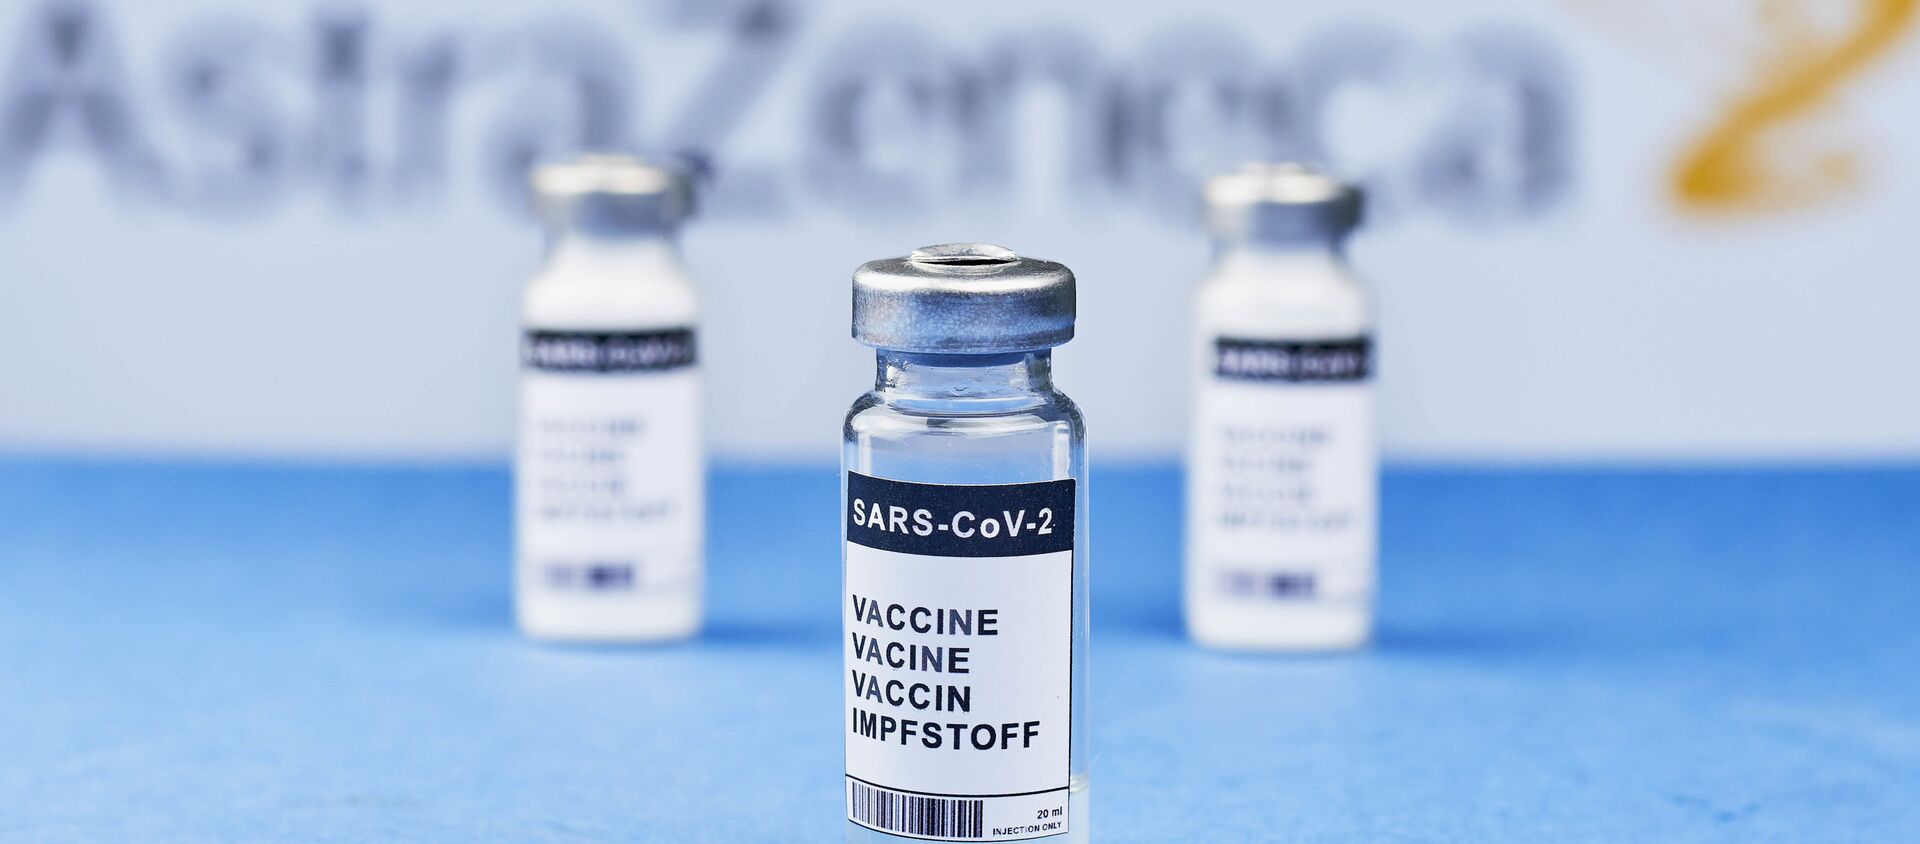 Vaccin d'AstraZeneca/Oxford contre le Covid-19 (image d'illustration) - Sputnik Afrique, 1920, 14.03.2021